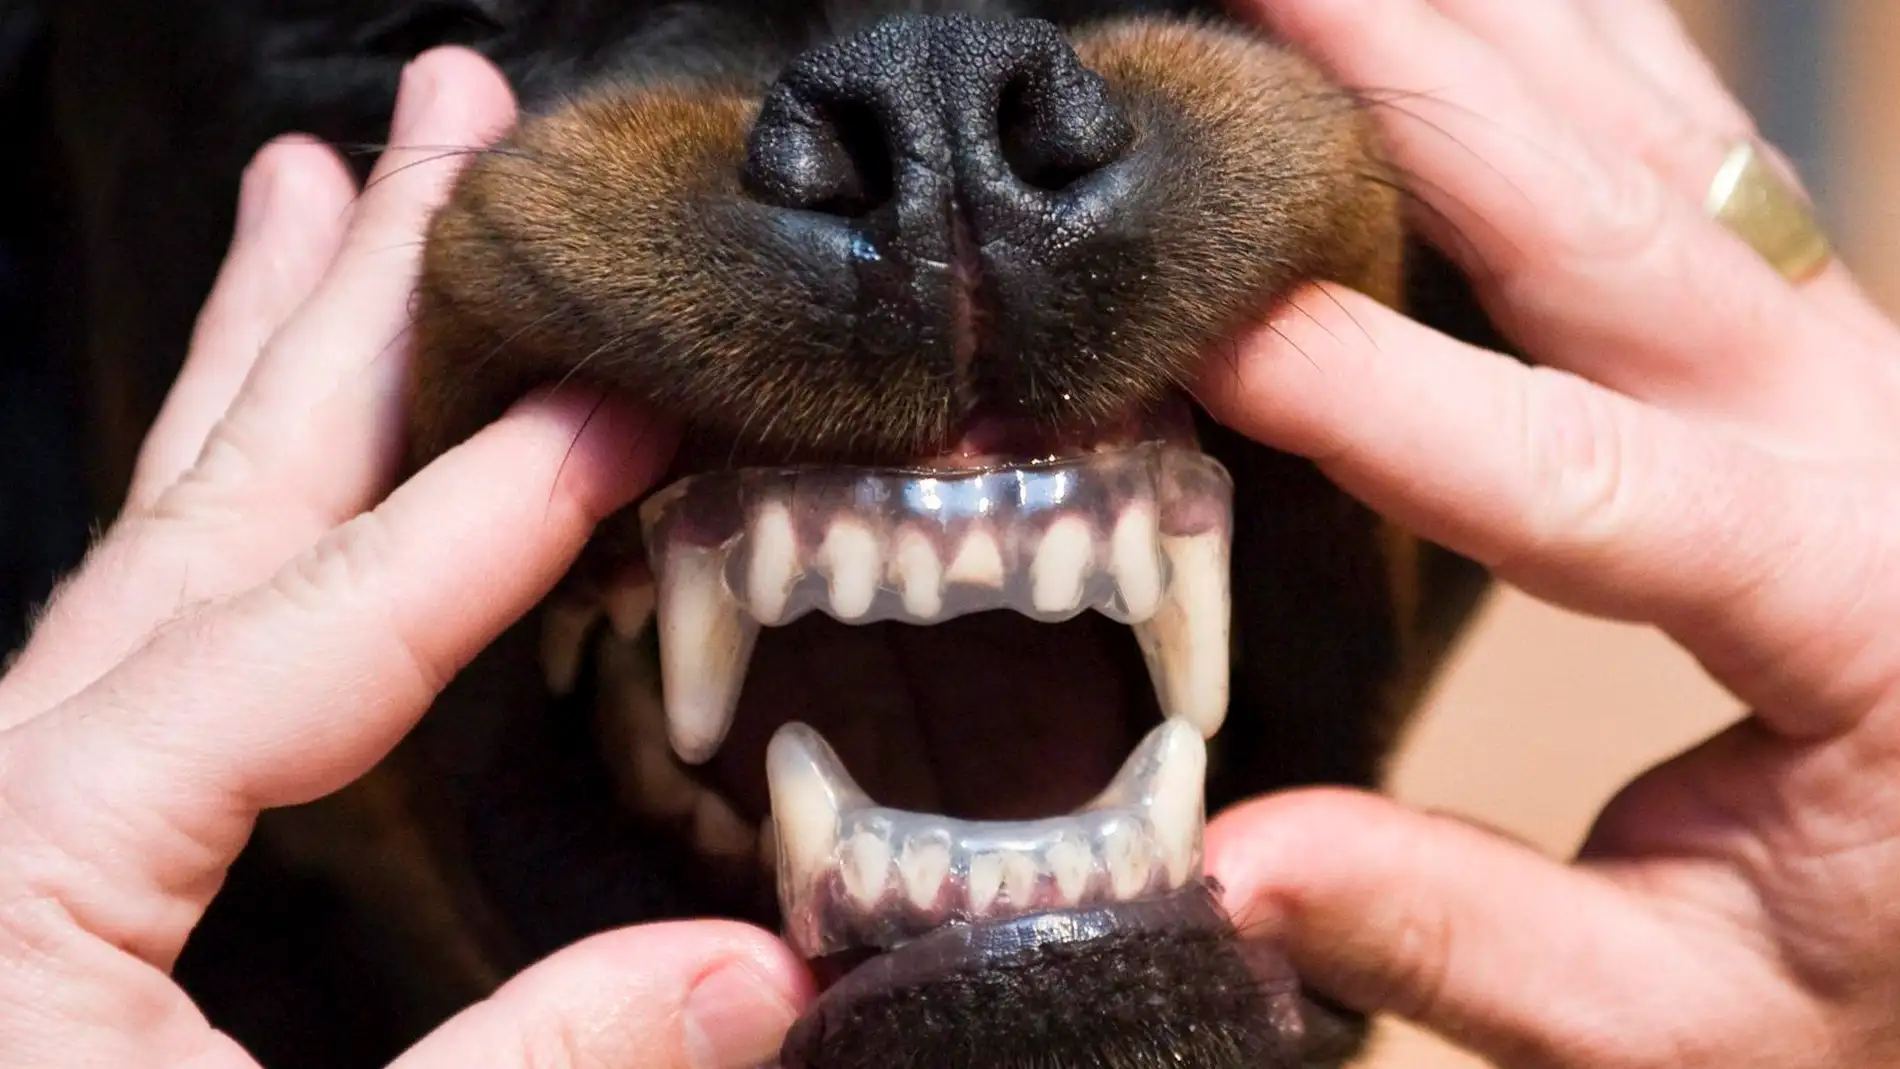 Un perro de la raza Rottweiler enseña sus dientes